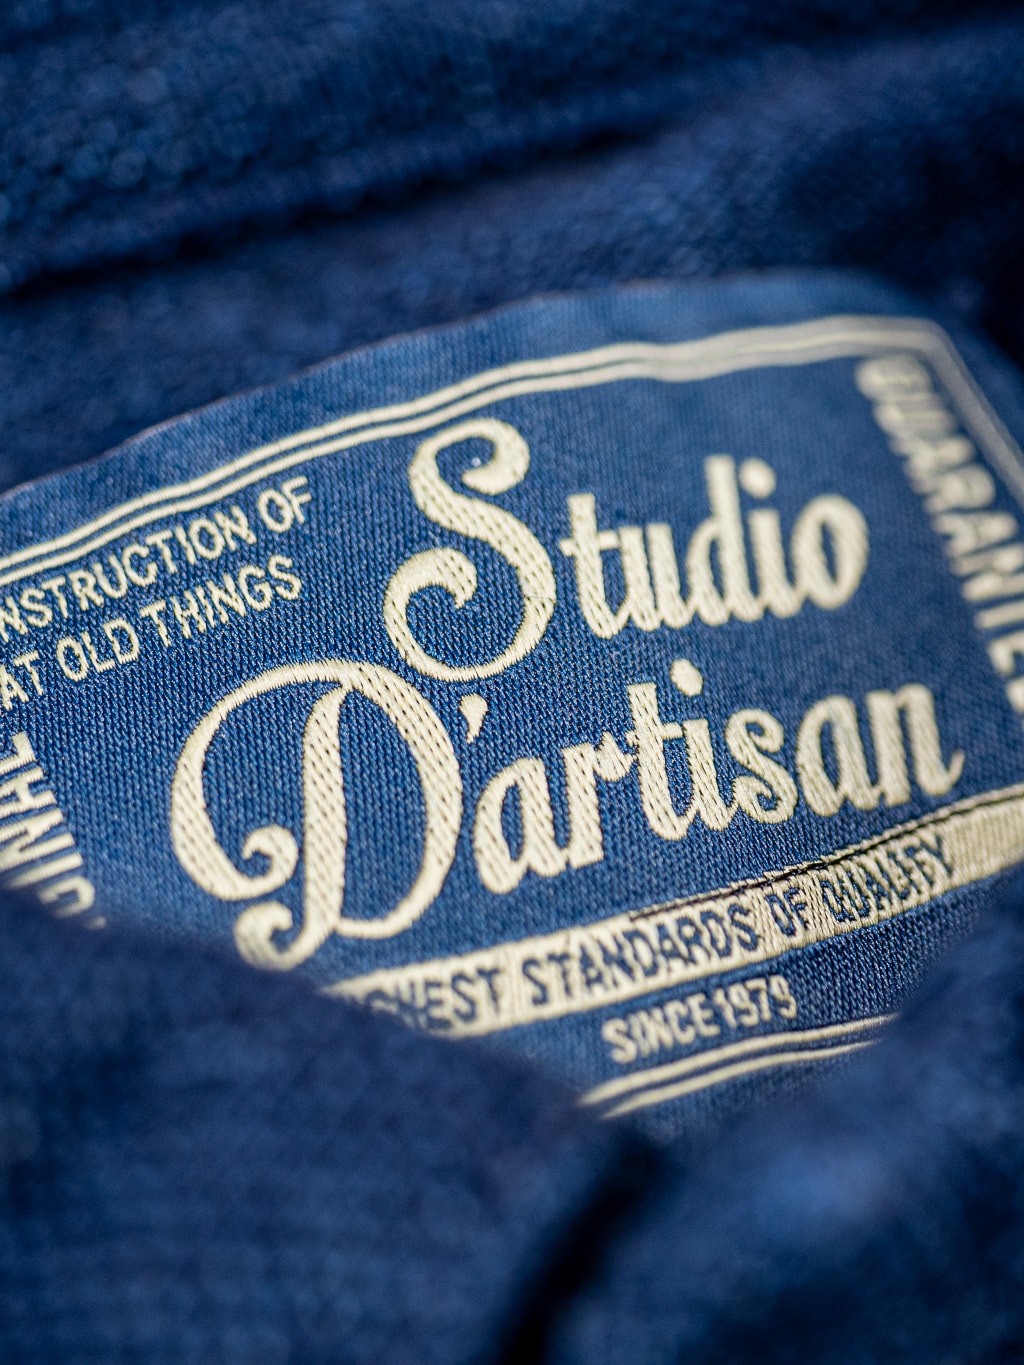 studio dartisan indigo dyed pique polo shirt interior tag